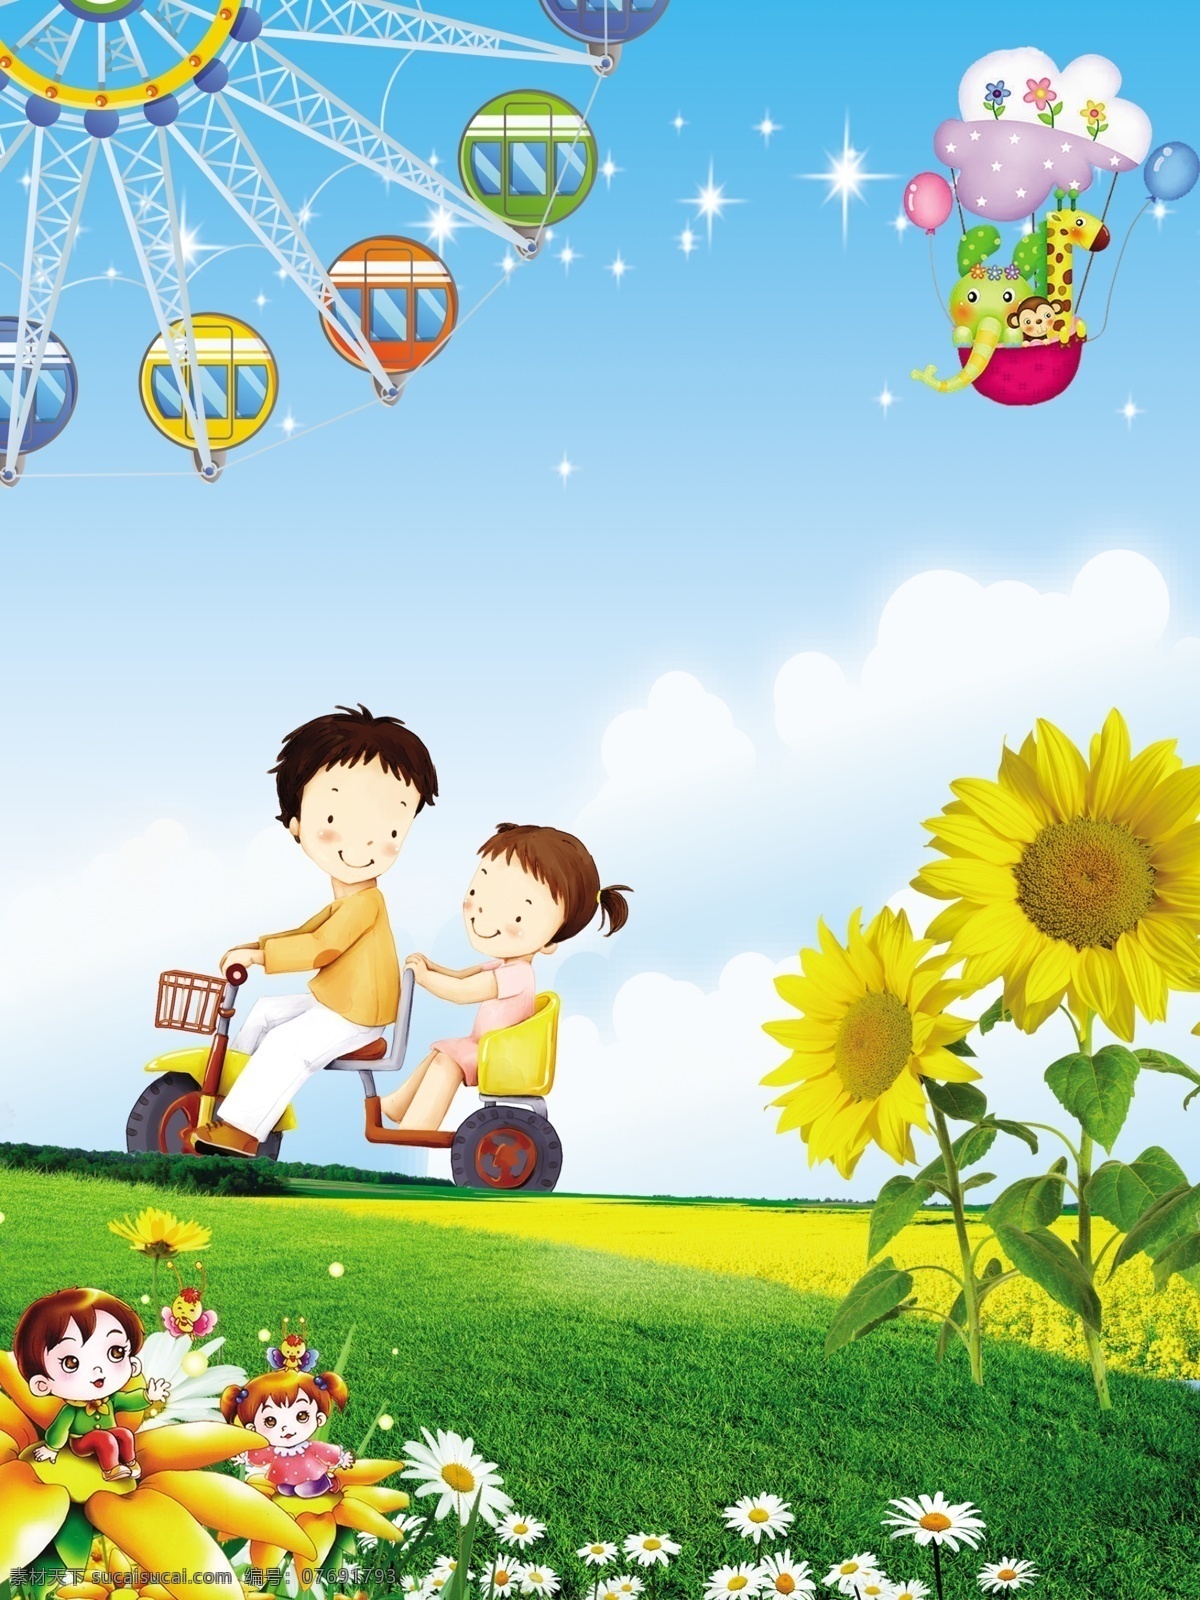 儿童卡通背景 向日葵 卡通 可爱 幼儿园 儿童 背景海报 卡通设计